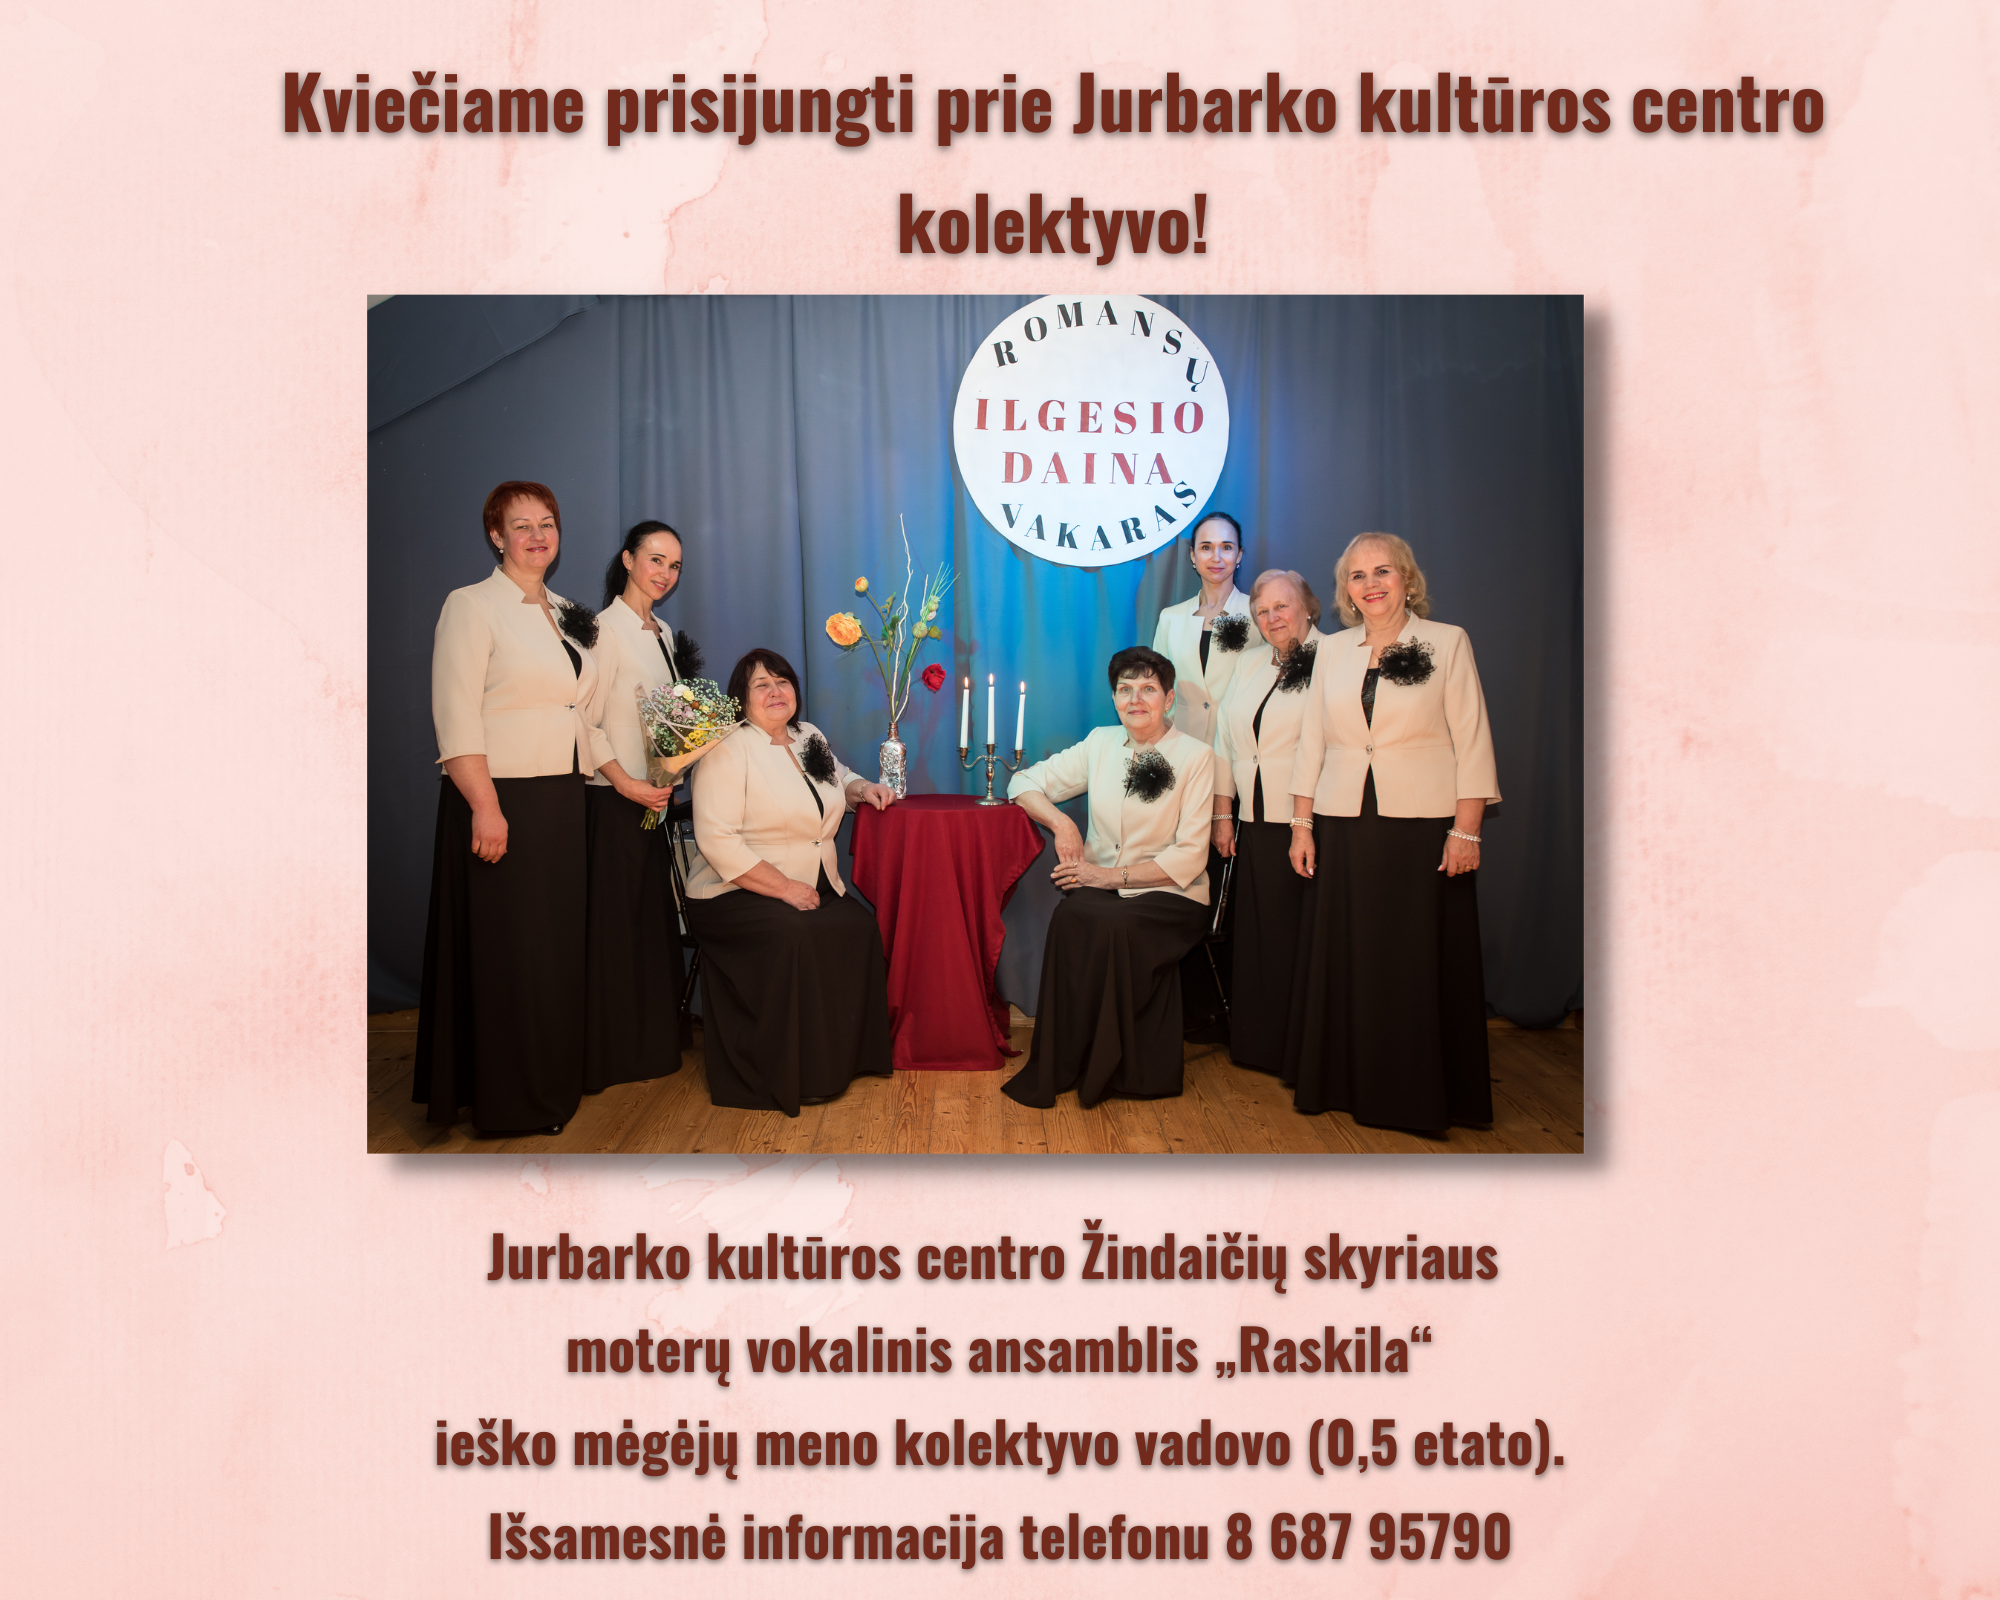 Kviečiame prisijungti prie Jurbarko kultūros centro kolektyvo